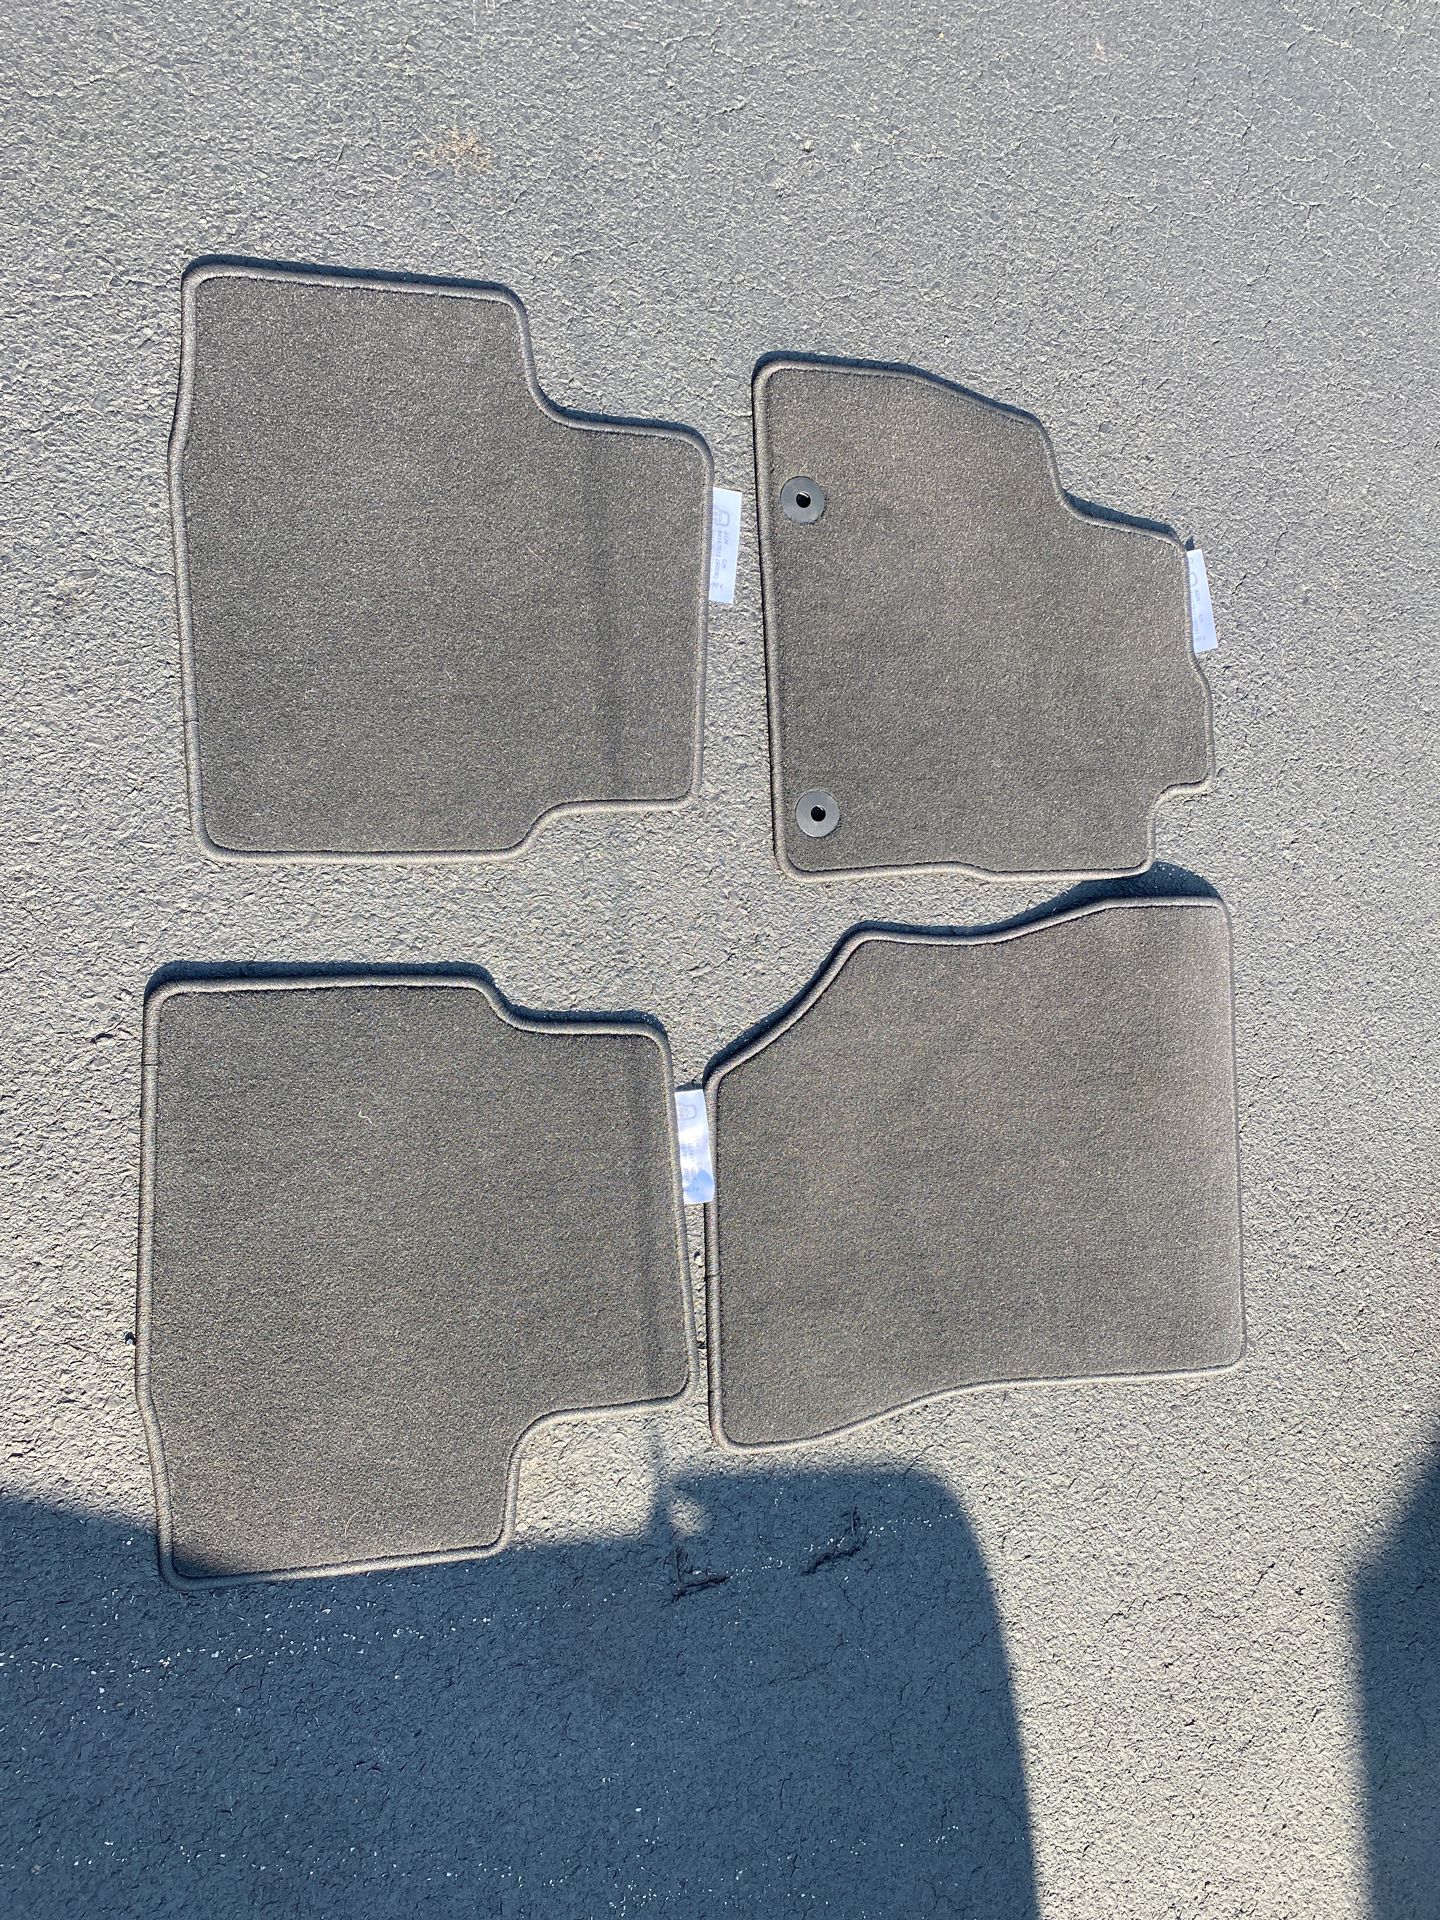 2016-2018 Chevy Cruze original floor mats, black.